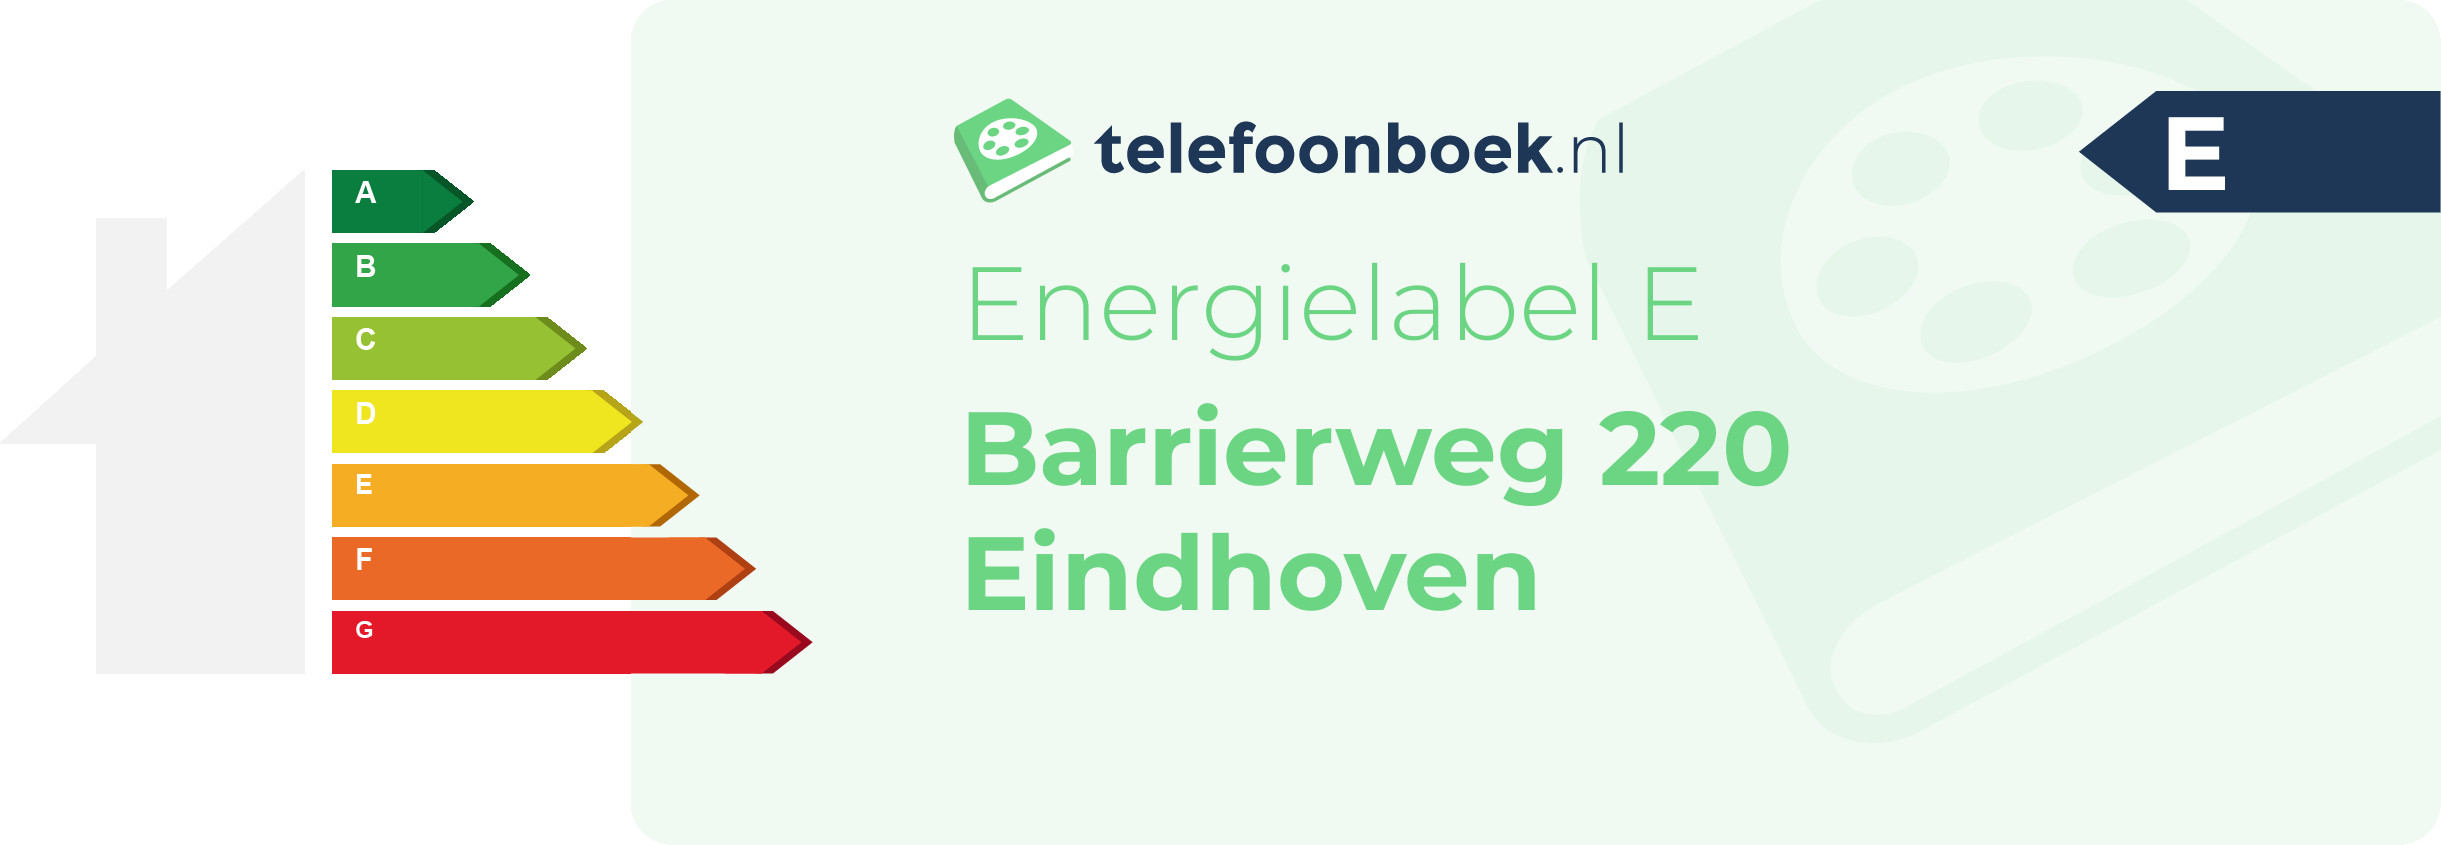 Energielabel Barrierweg 220 Eindhoven